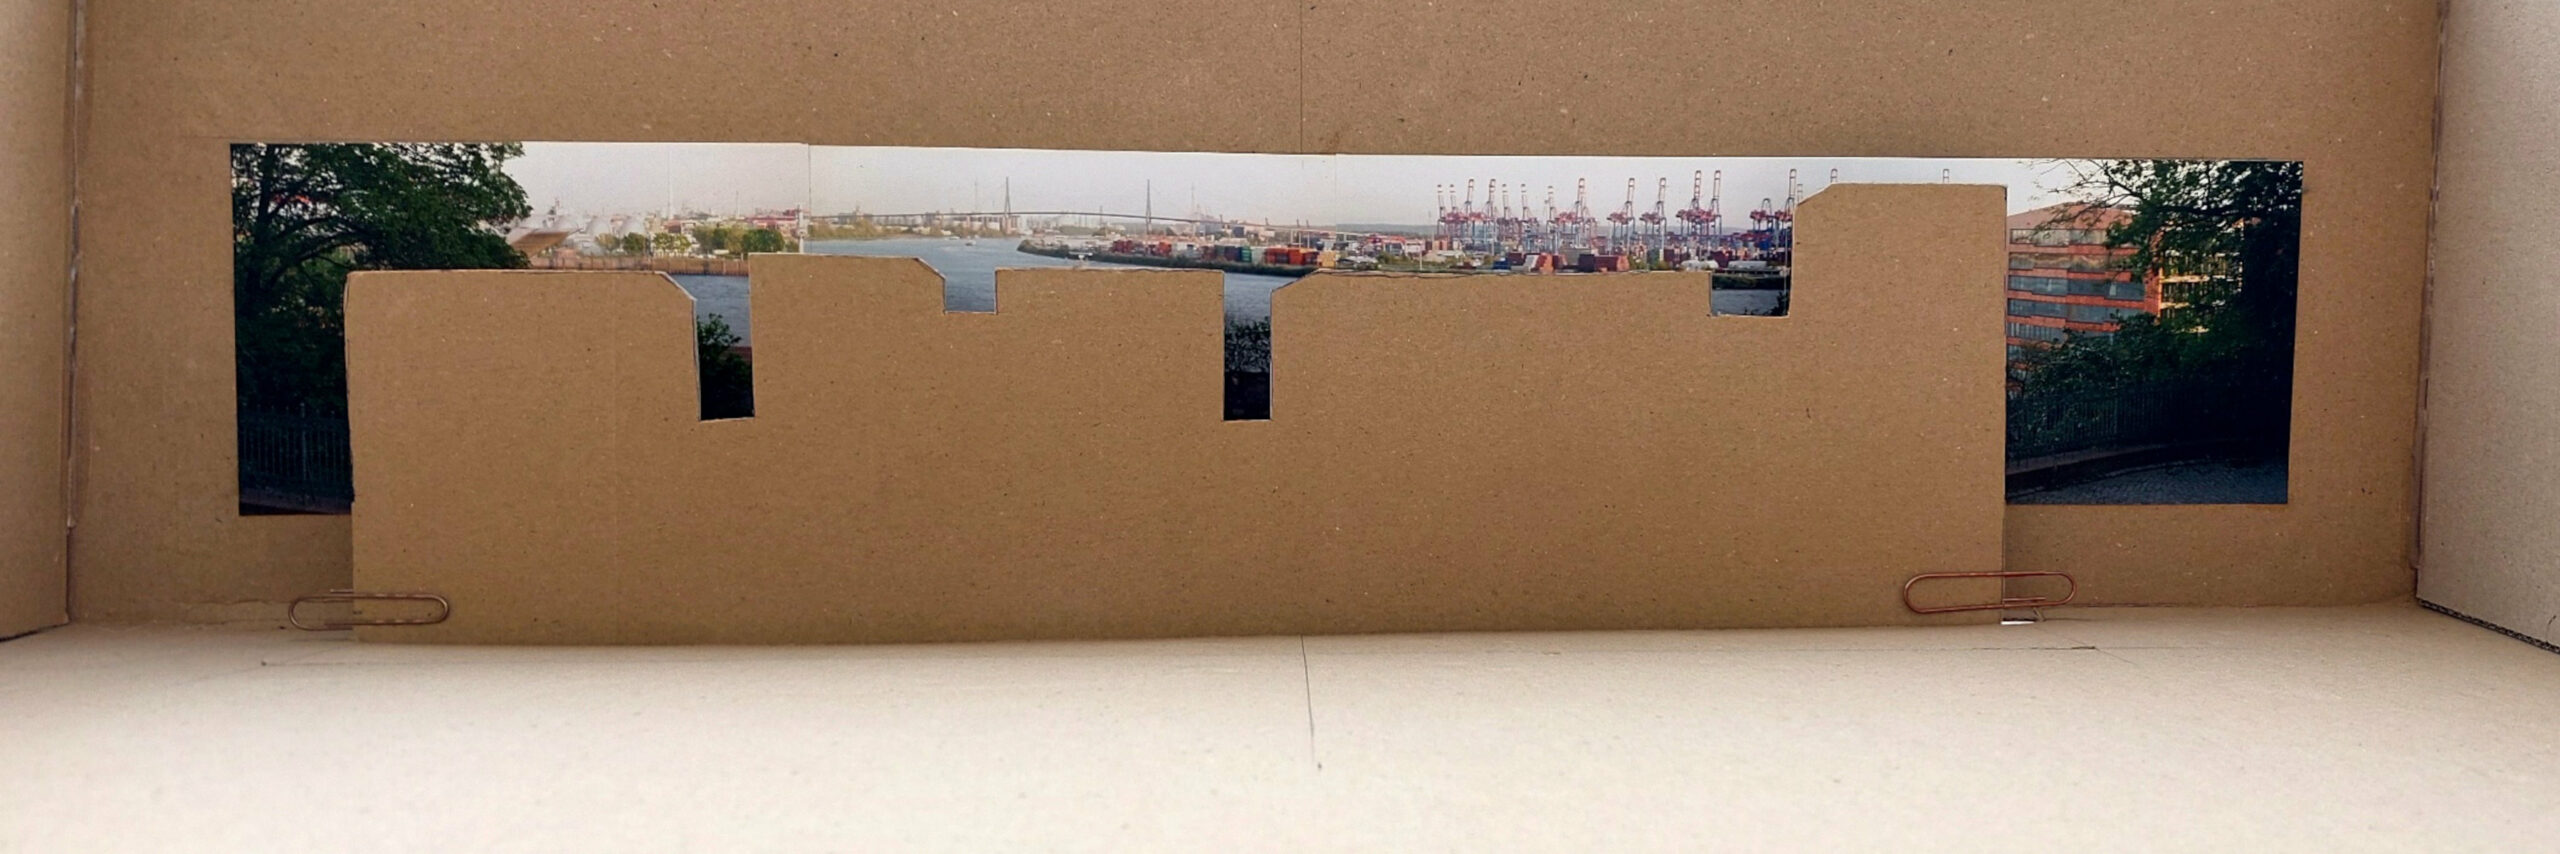 Mit diesem Pappmodell illustriert der Bürgerverein Blankenese seine Befürchtung, der Elbblick am Alten Fischereihafen würde völlig zugebaut.